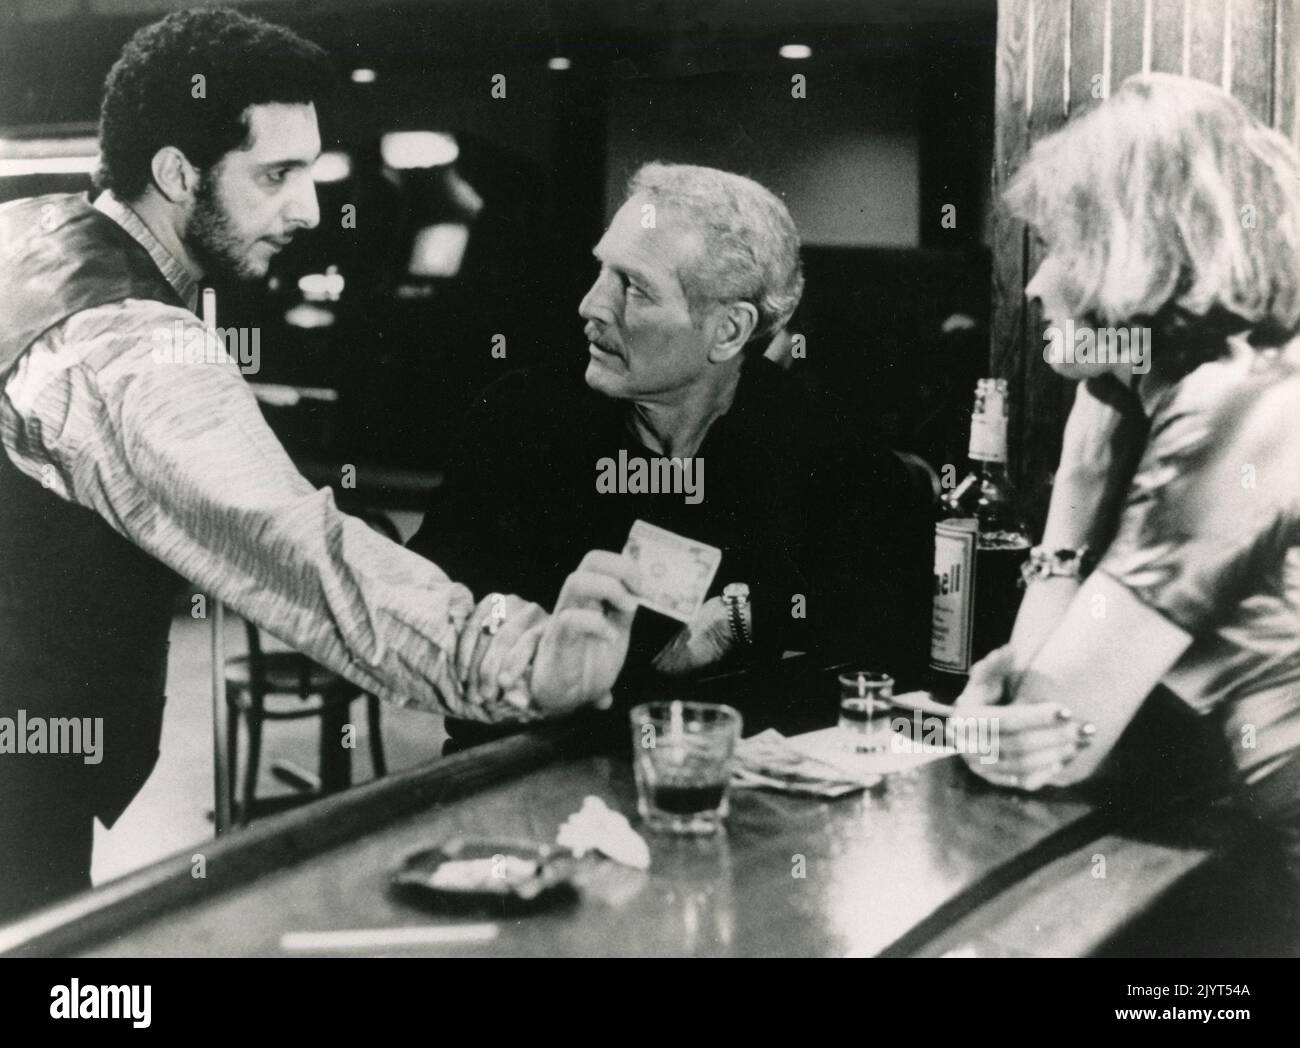 Les acteurs américains John Turturro, Paul Newman, et l'actrice Helen Shaver dans le film The Color of Money, USA 1986 Banque D'Images